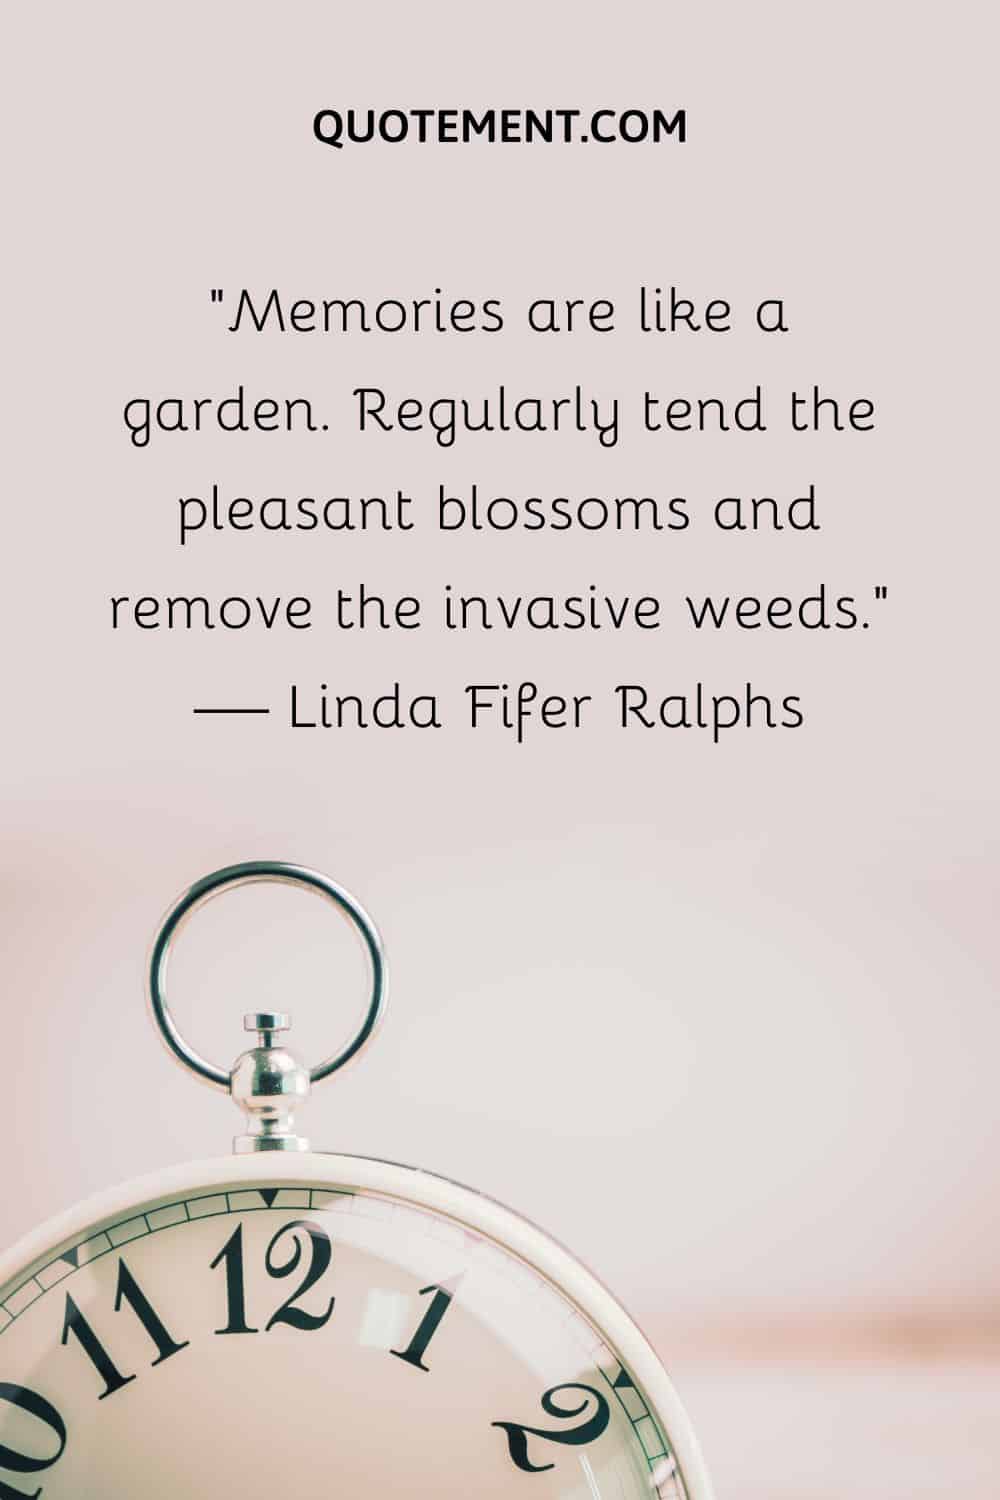 Memories are like a garden